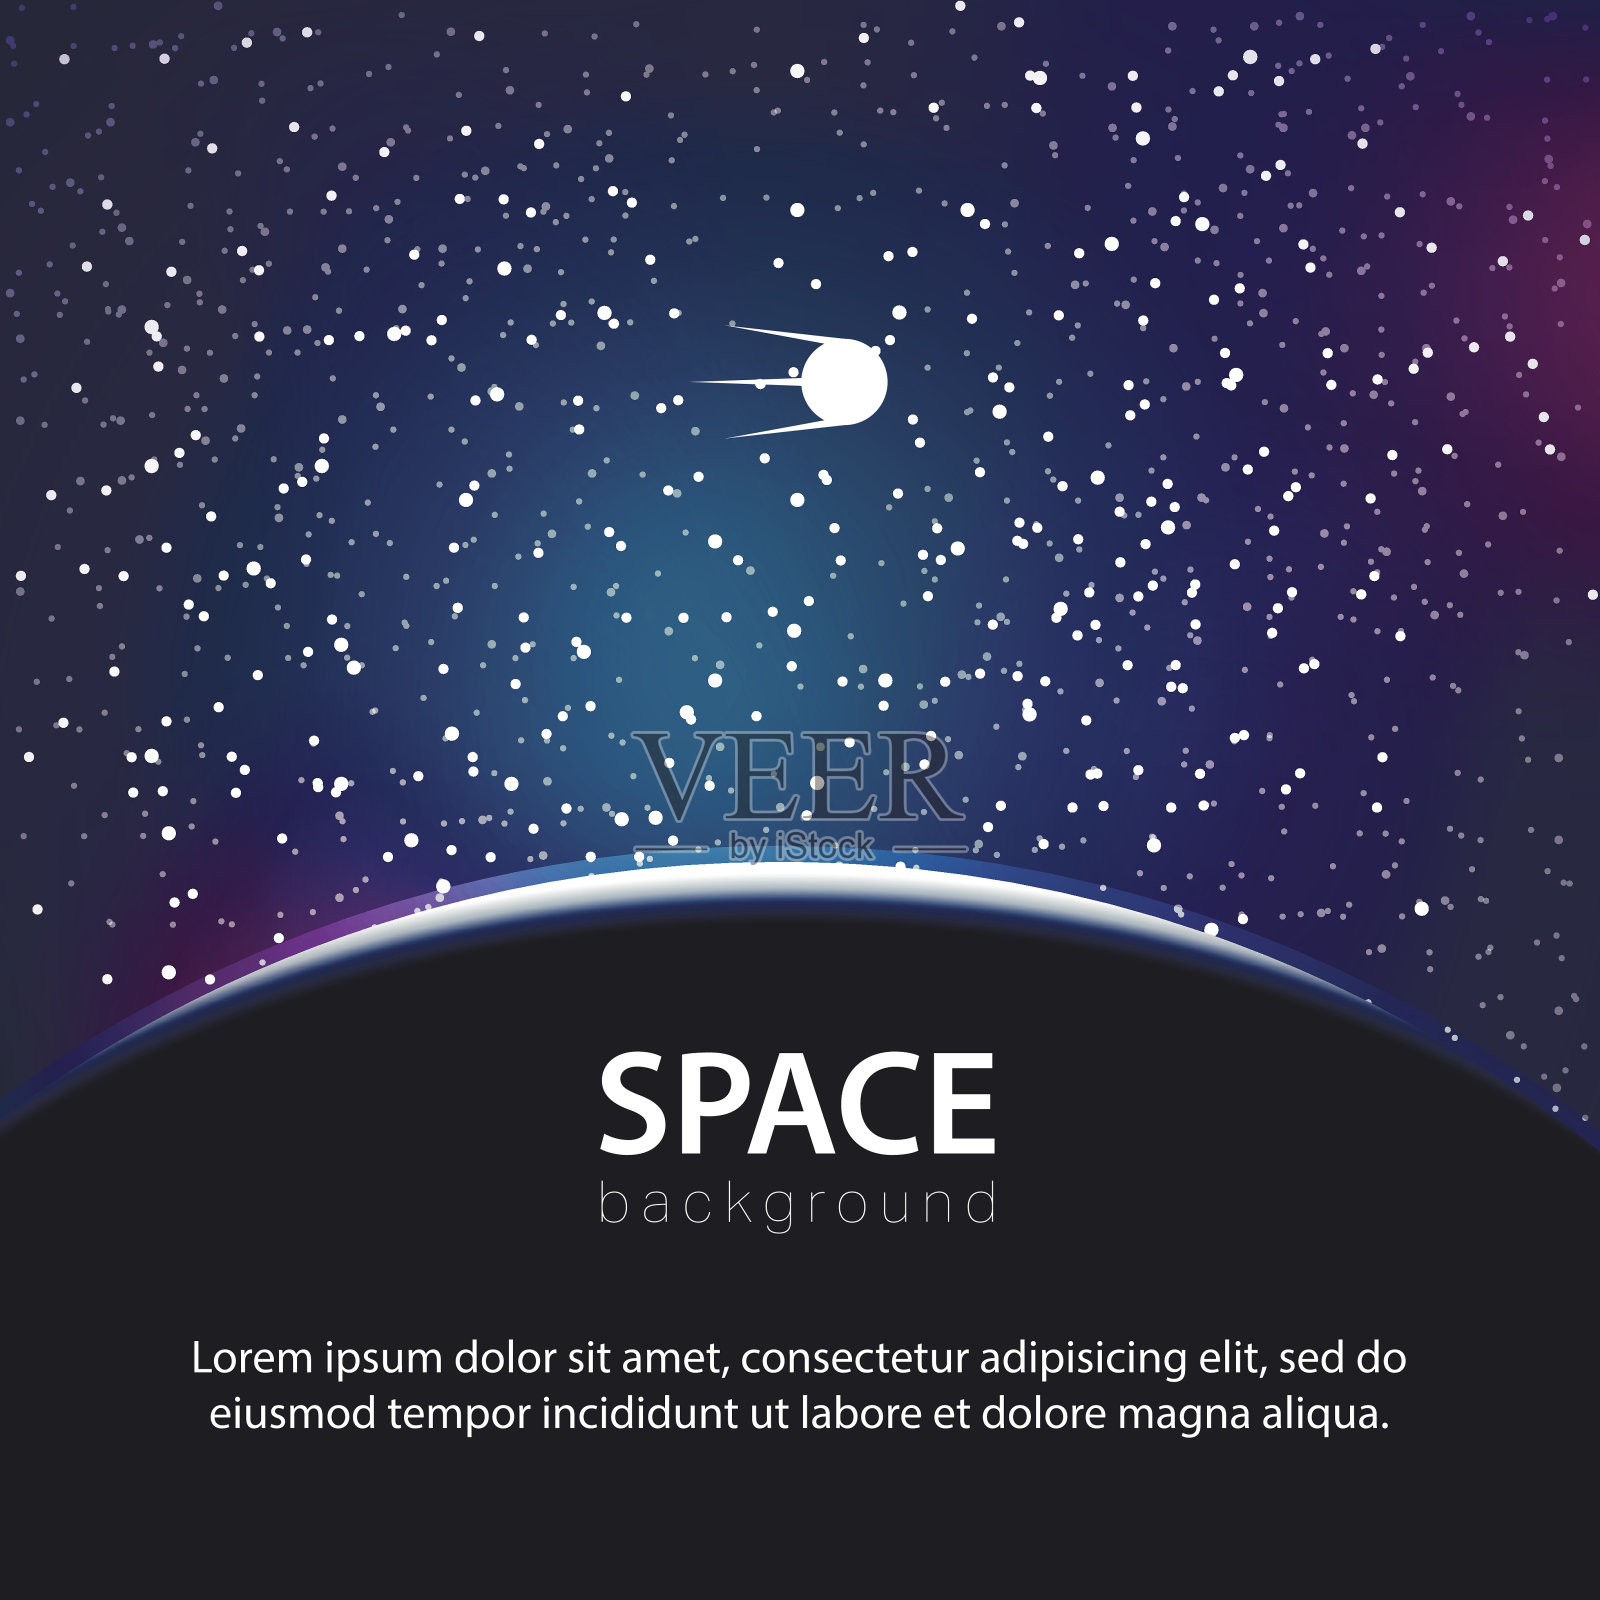 带有行星和卫星的矢量空间背景插画图片素材